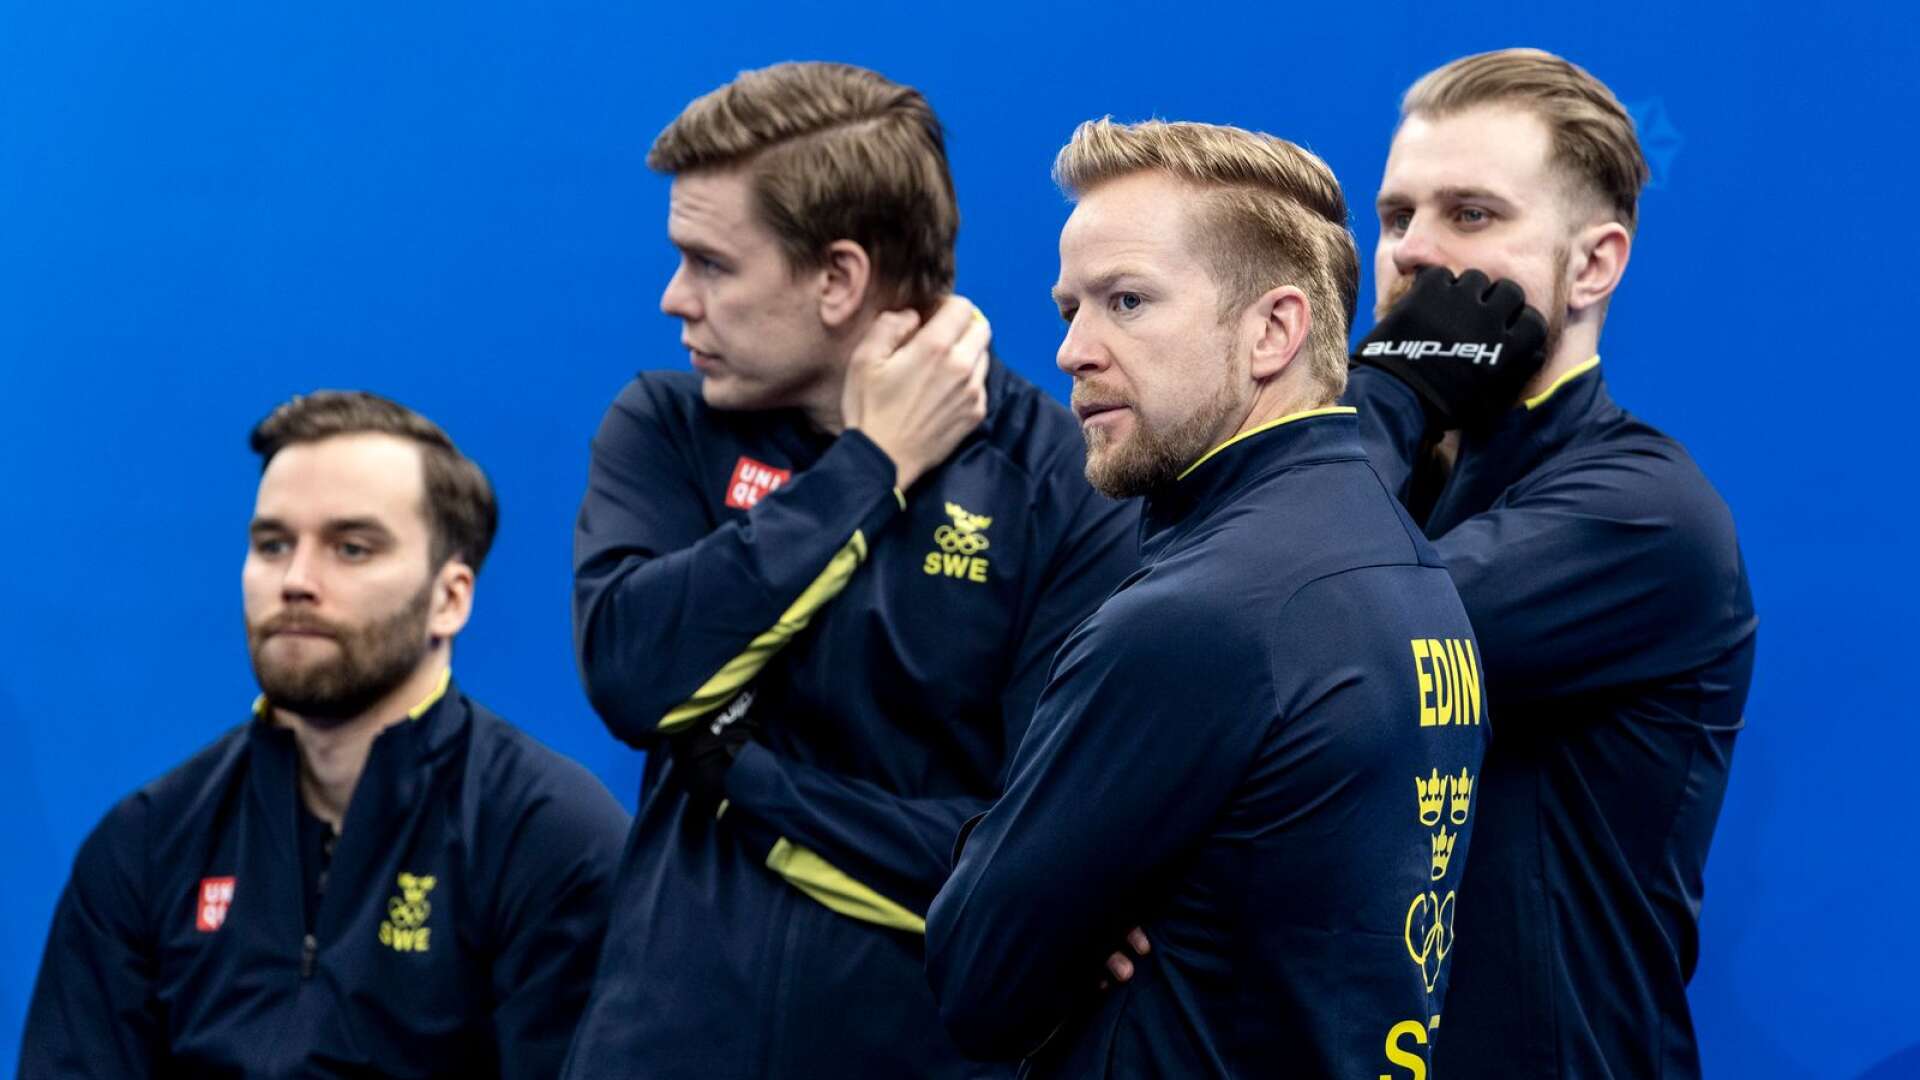 Oskar Eriksson, Christoffer Sundgren, Niklas Edin och Rasmus Wranå är ute efter den enda titeln som saknas, OS-guldet.